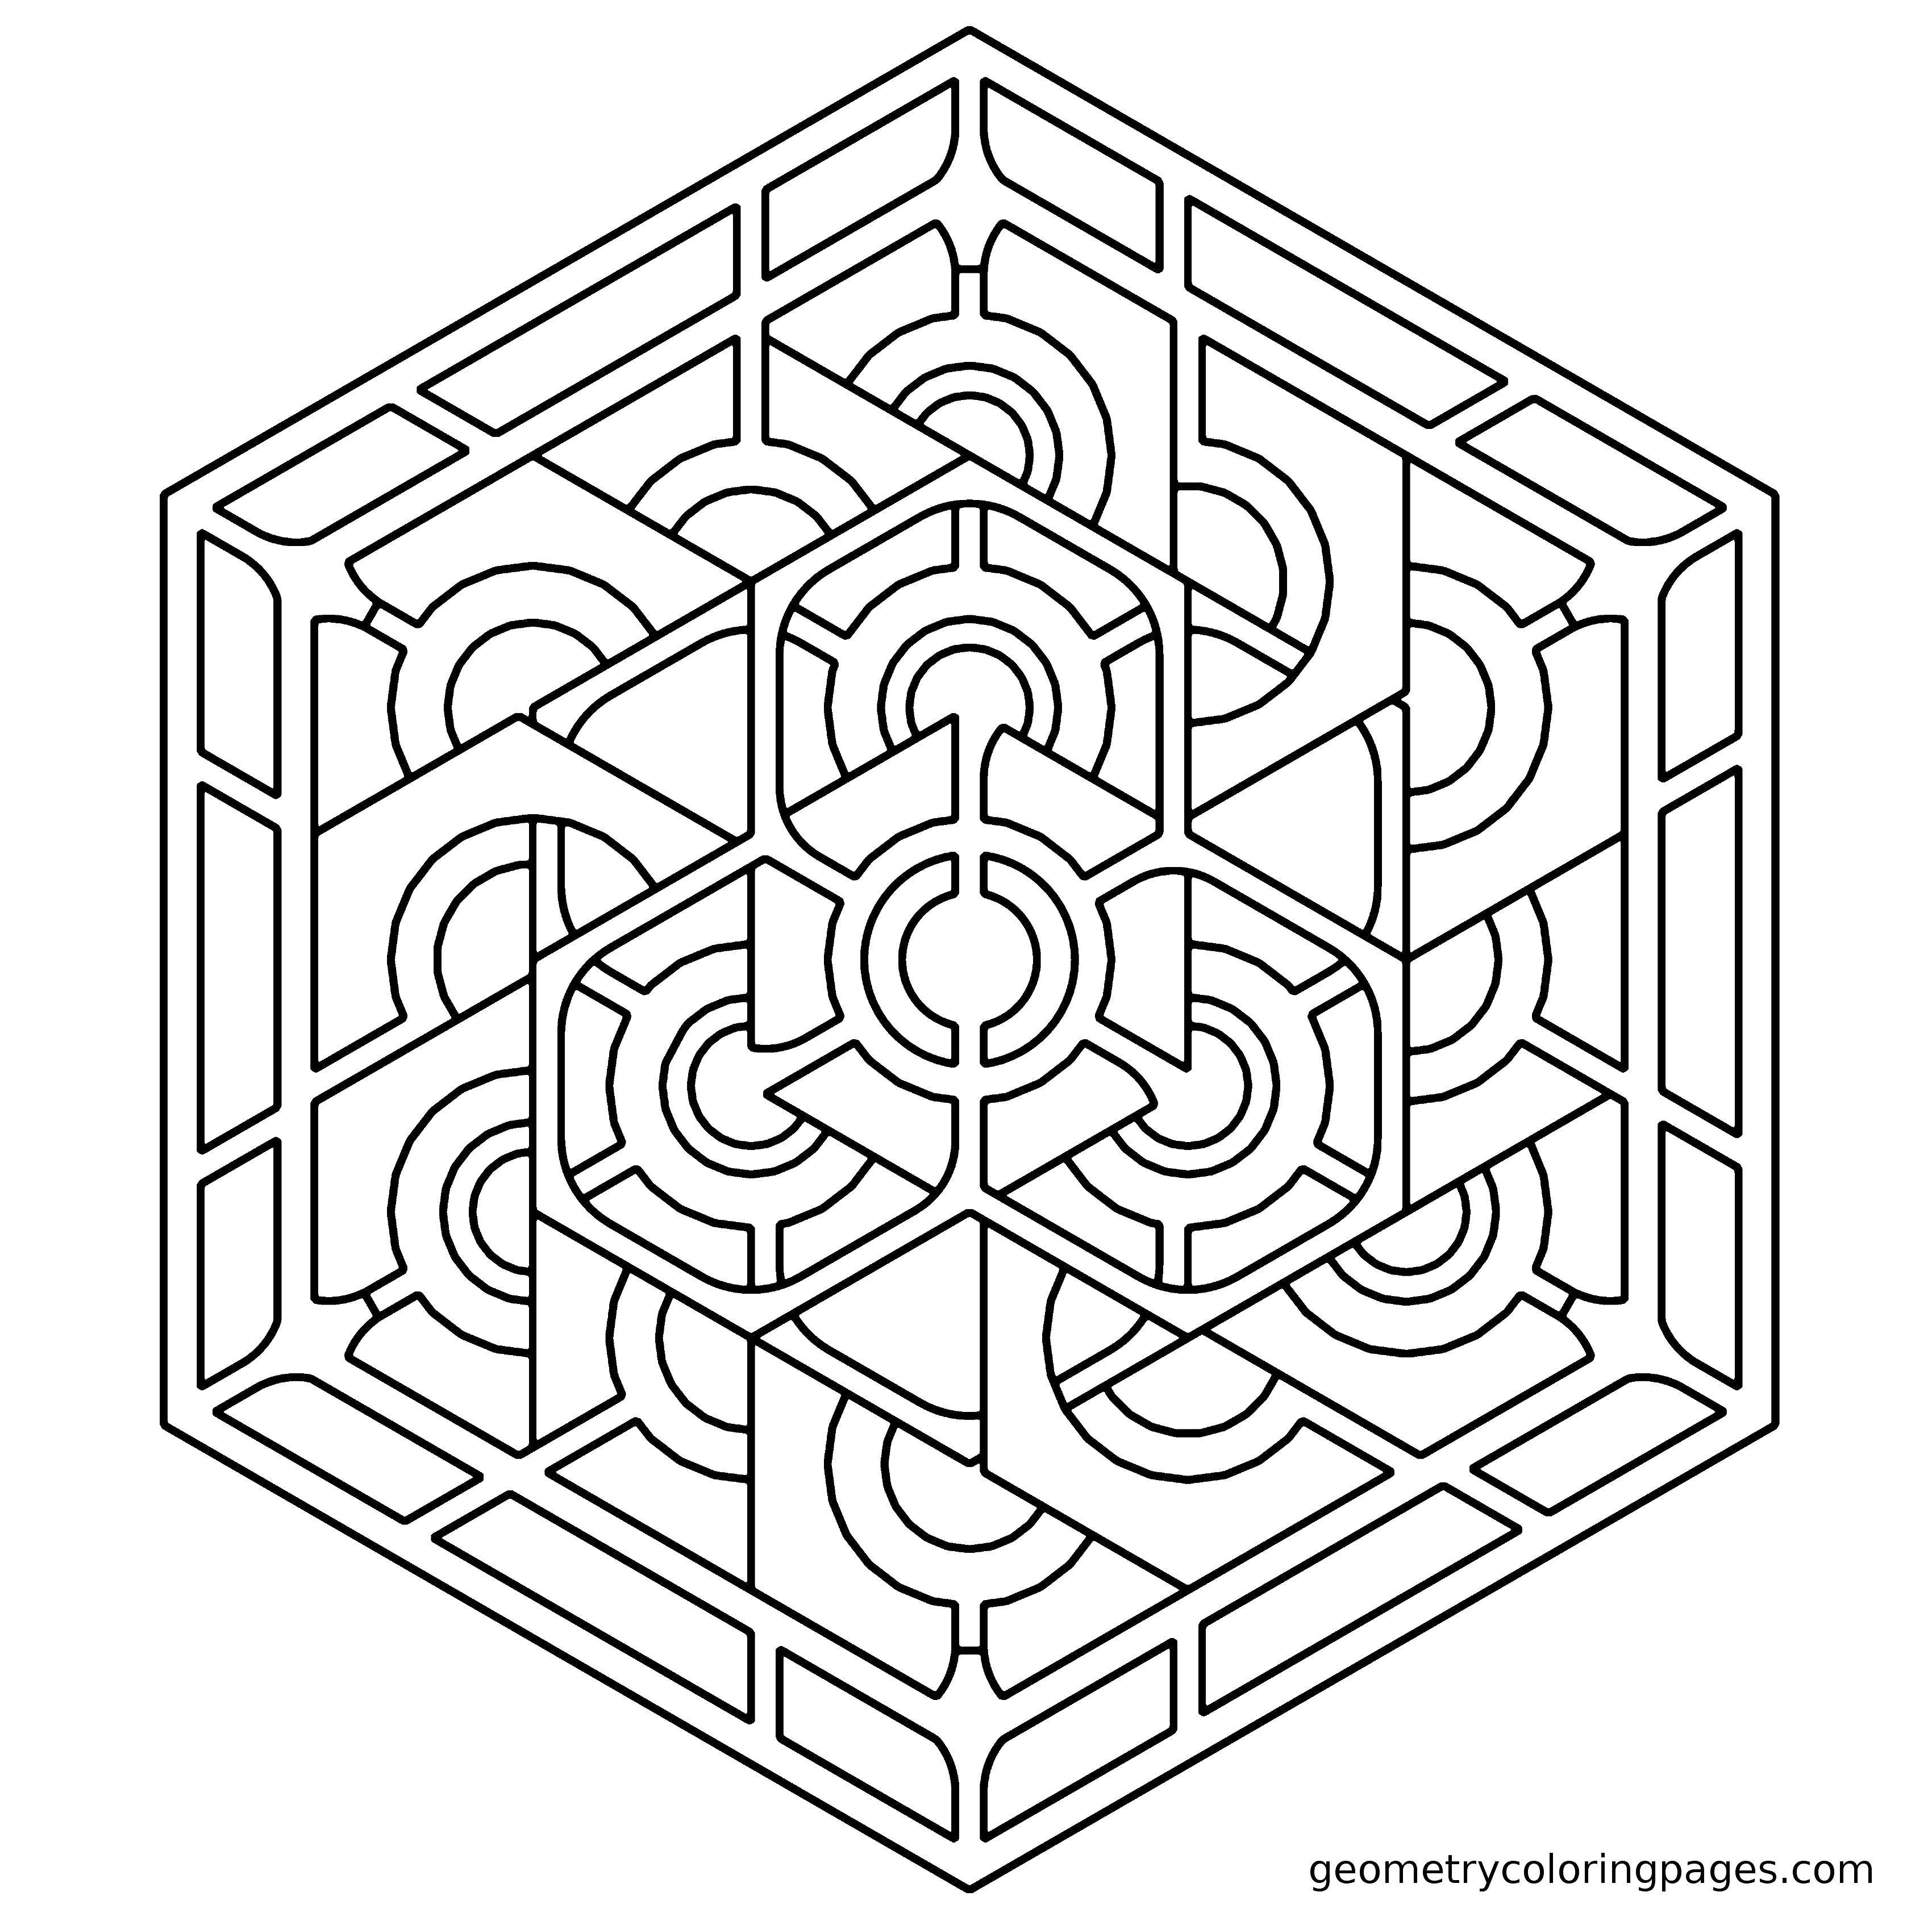 Название: Раскраска Узор в шестиугольнике. Категория: С геометрическими фигурами. Теги: Узоры, геометрические.